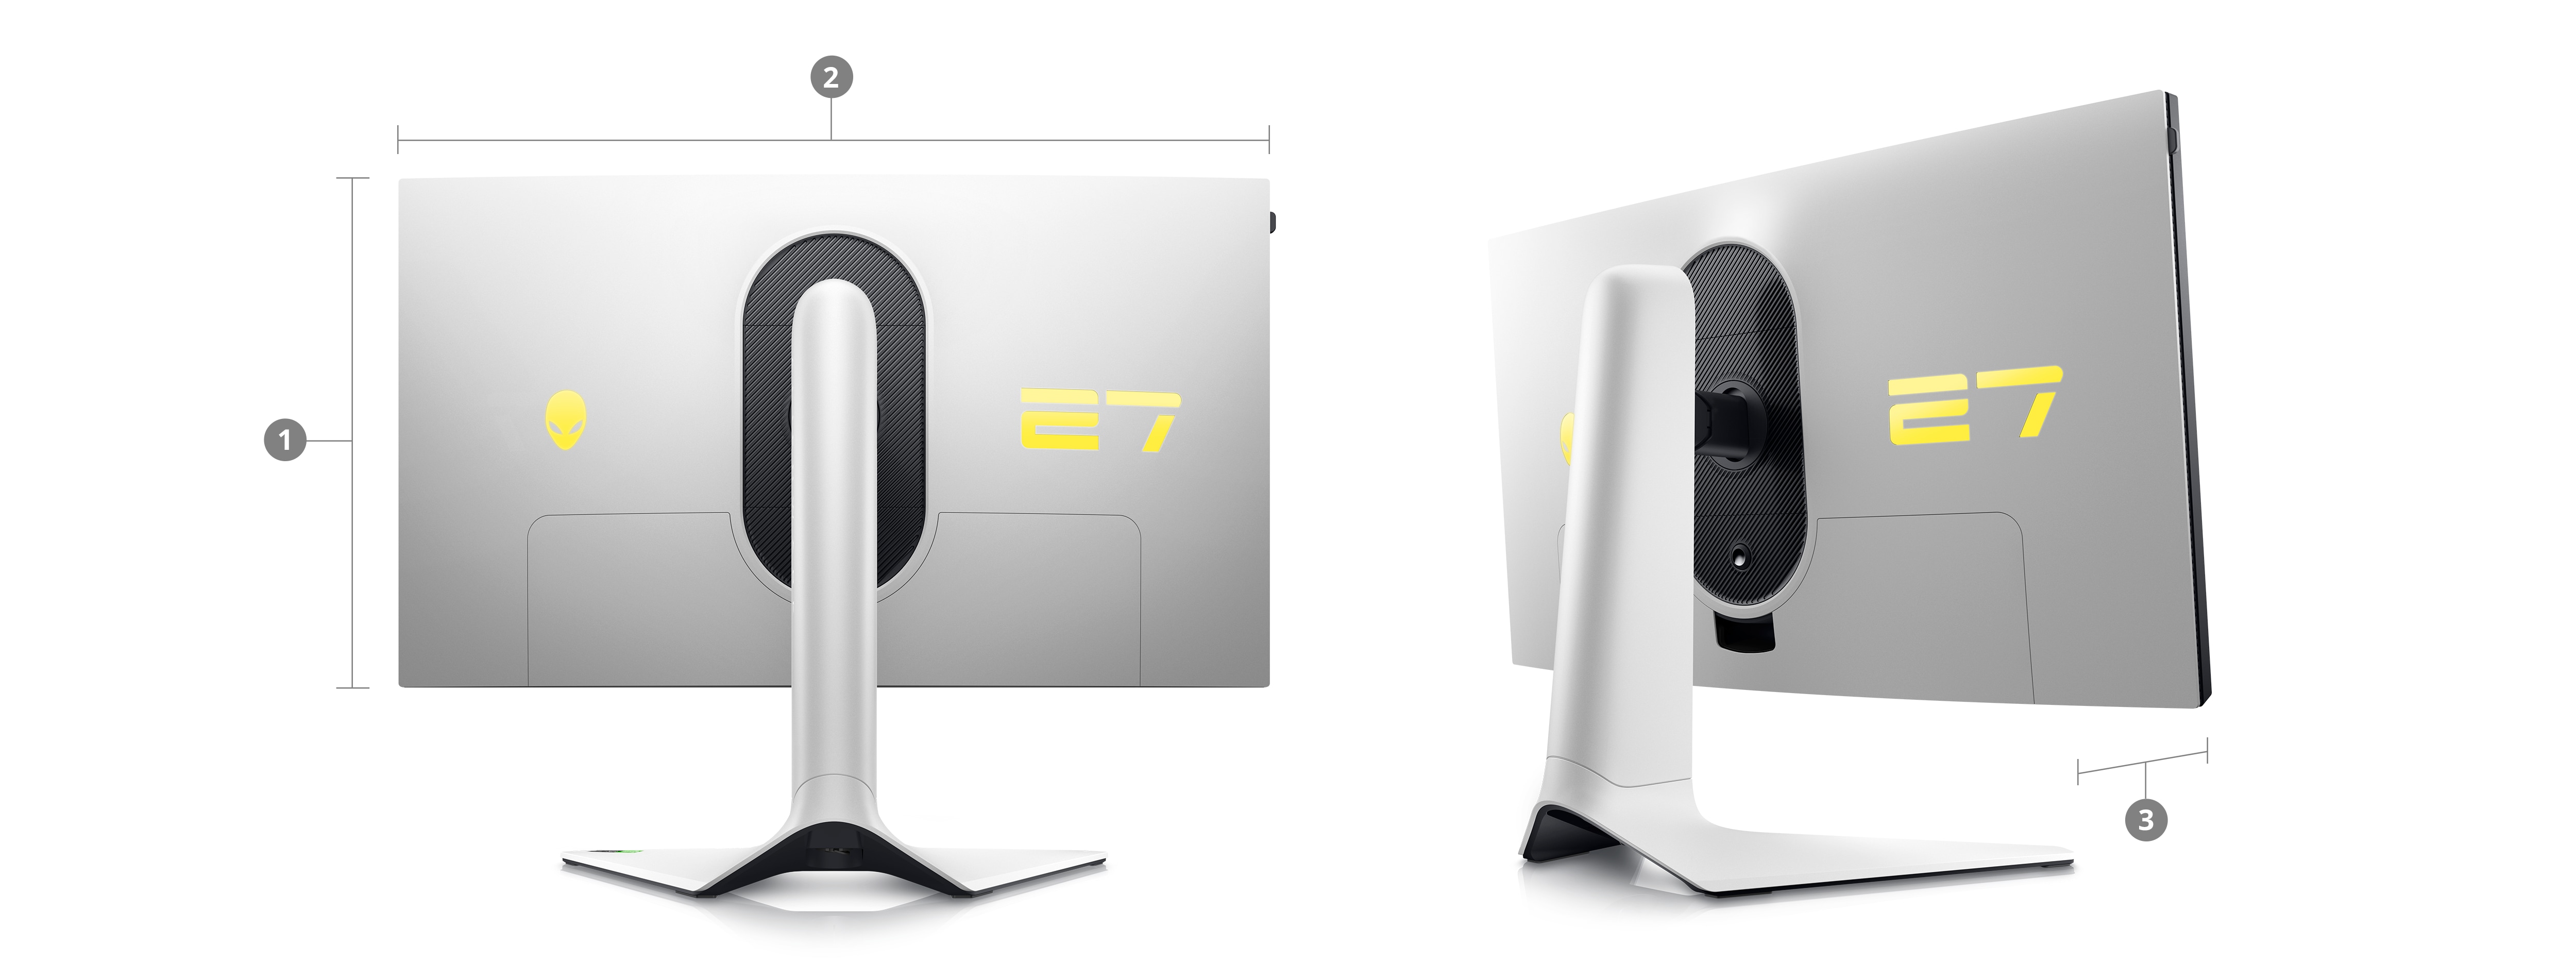 兩台 Dell AW2723DF 遊戲專用顯示器的圖片，數字 1 至 3 標示了產品尺寸與重量。